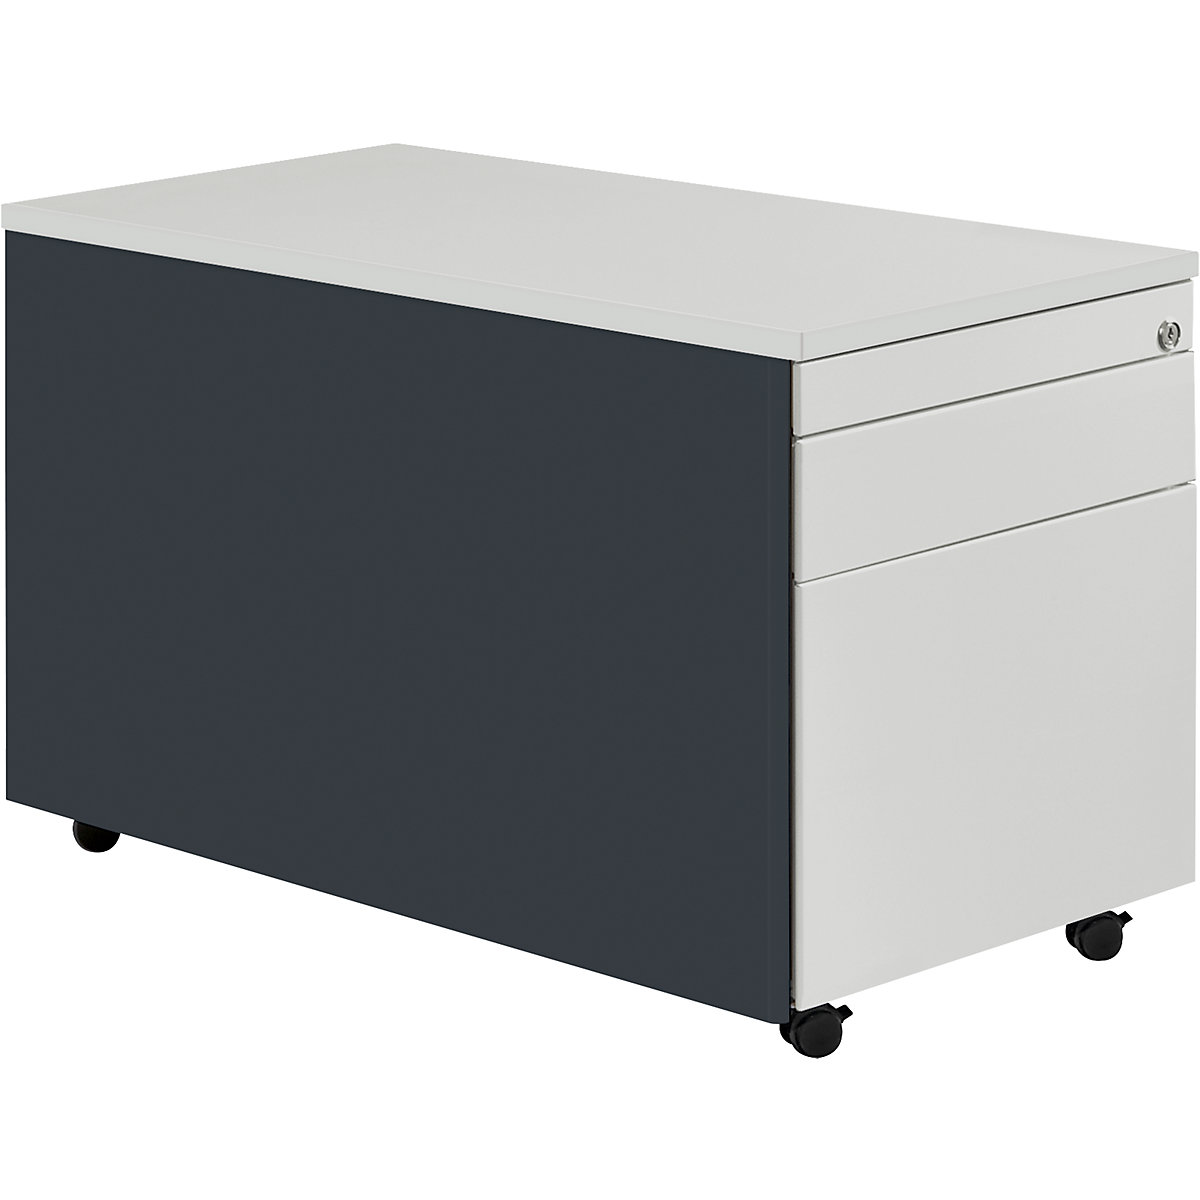 Zásuvkový kontajner s kolieskami – mauser, v x š 529 x 800 mm, 1 zásuvka na materiál, 1 závesná registratúra, antracitová / svetlošedá / svetlošedá-4